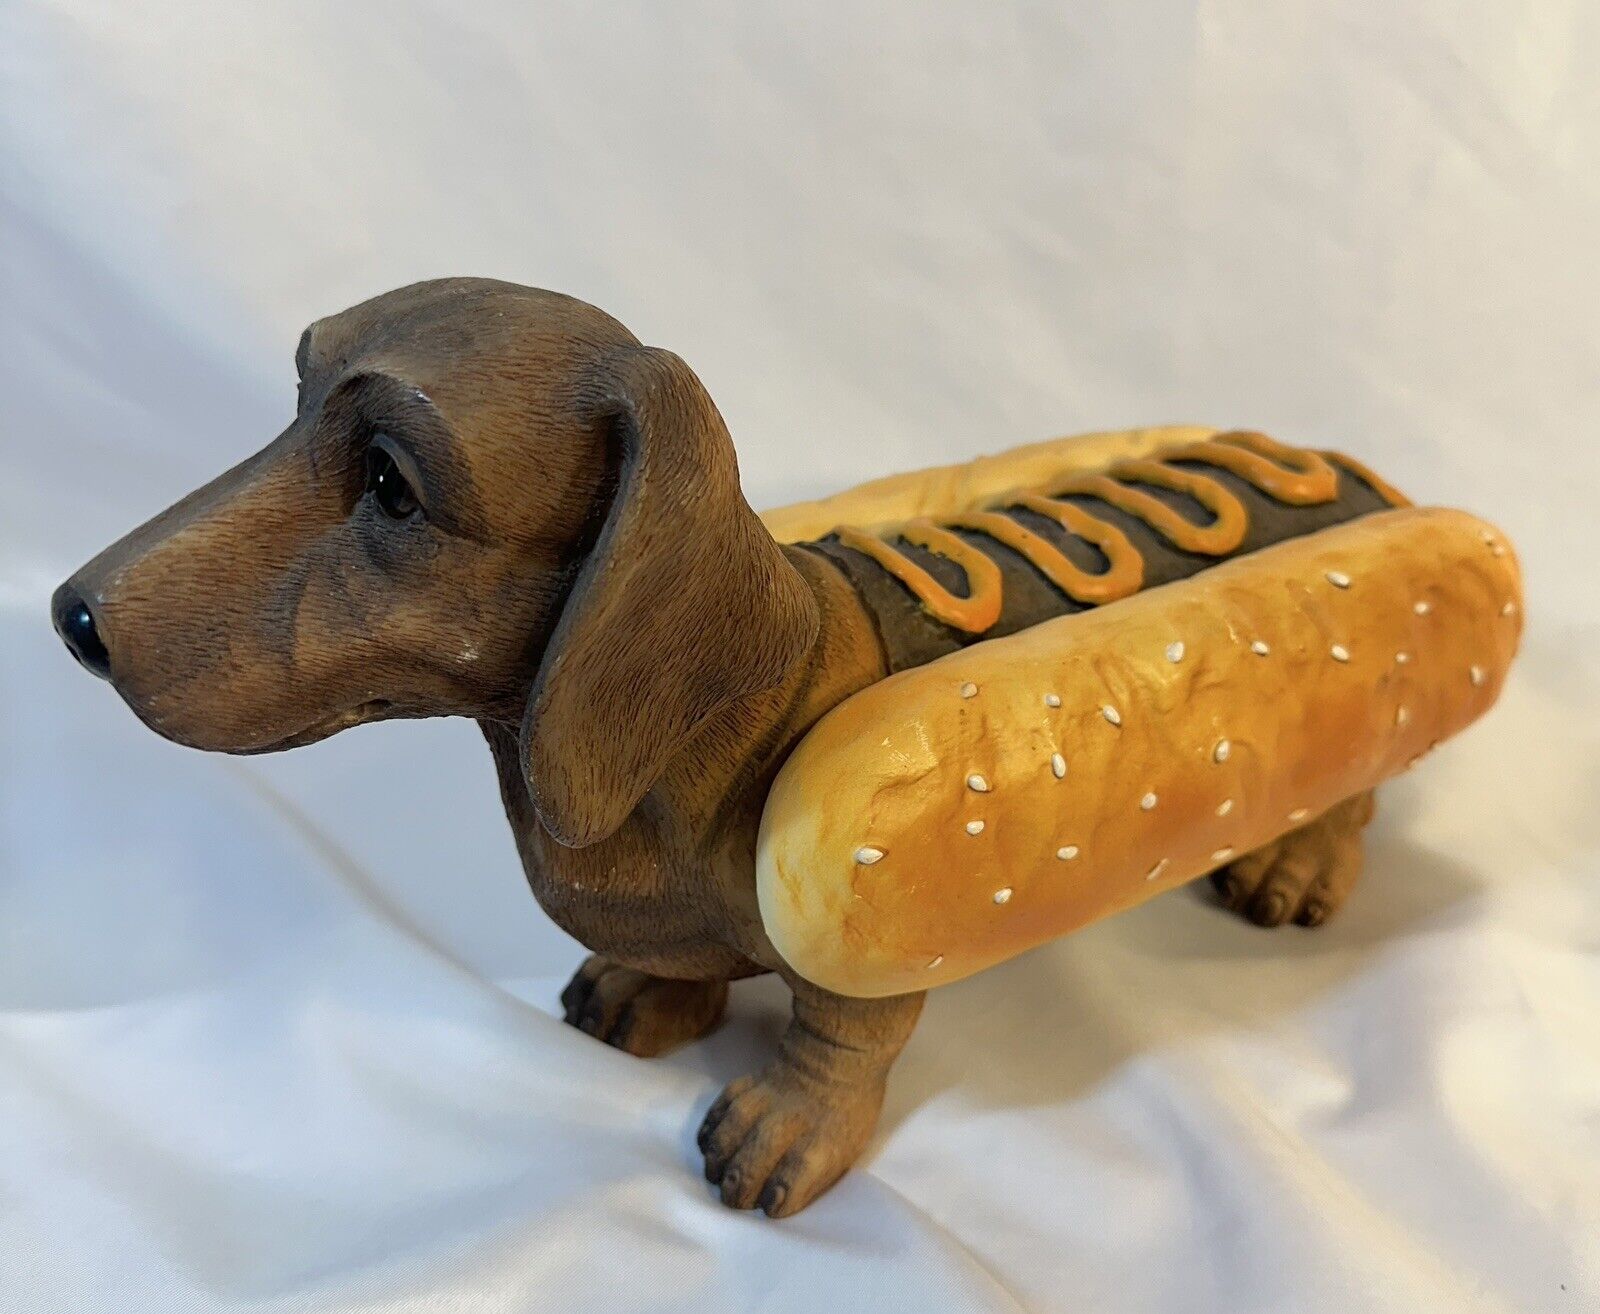 Weiner Hot Dog Dachshund In A Bun Figurine Doggie Pup Statue 12X7” Mustard Top